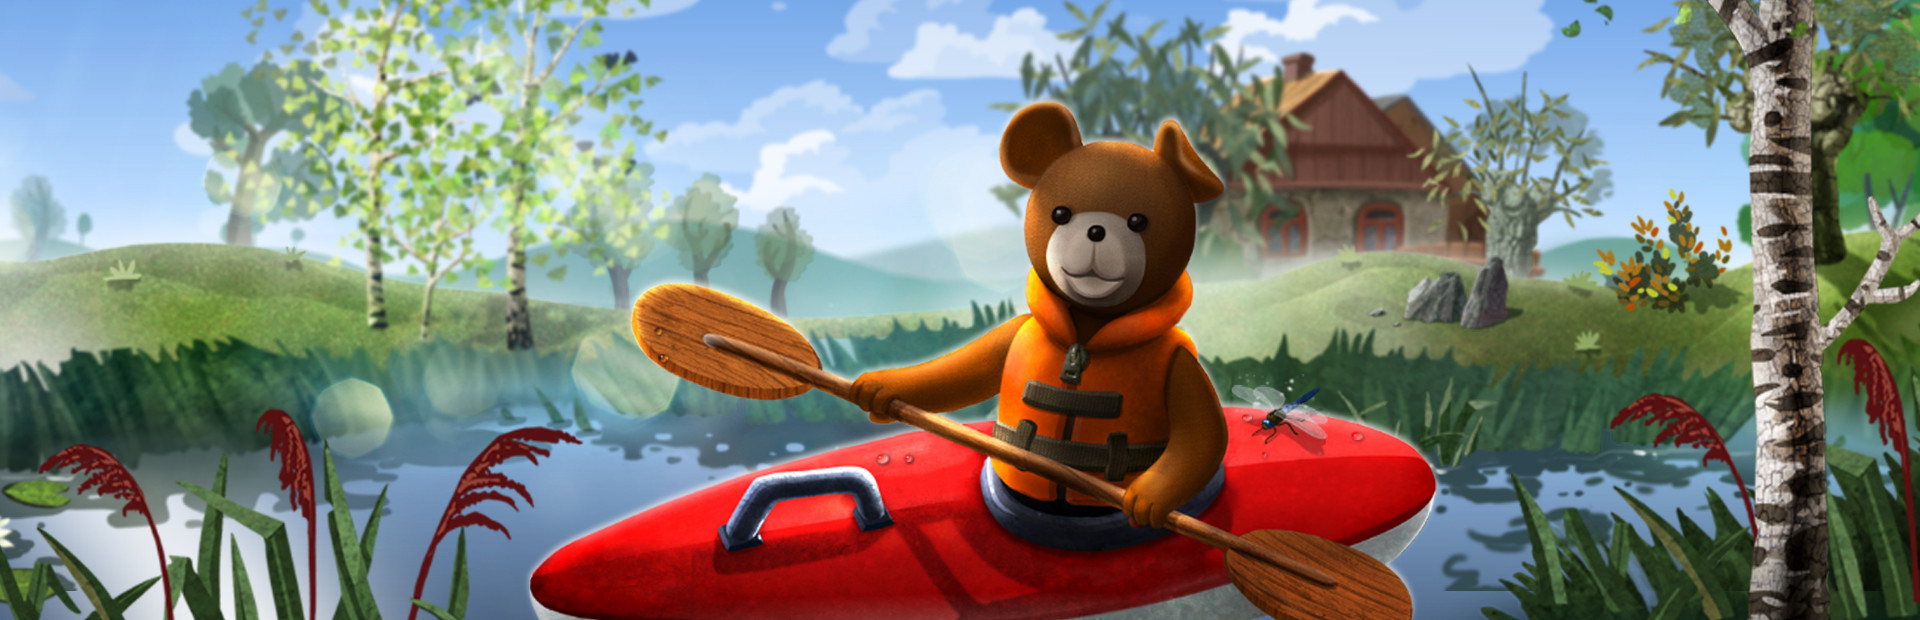 Teddy Floppy Ear - Kayaking cover image